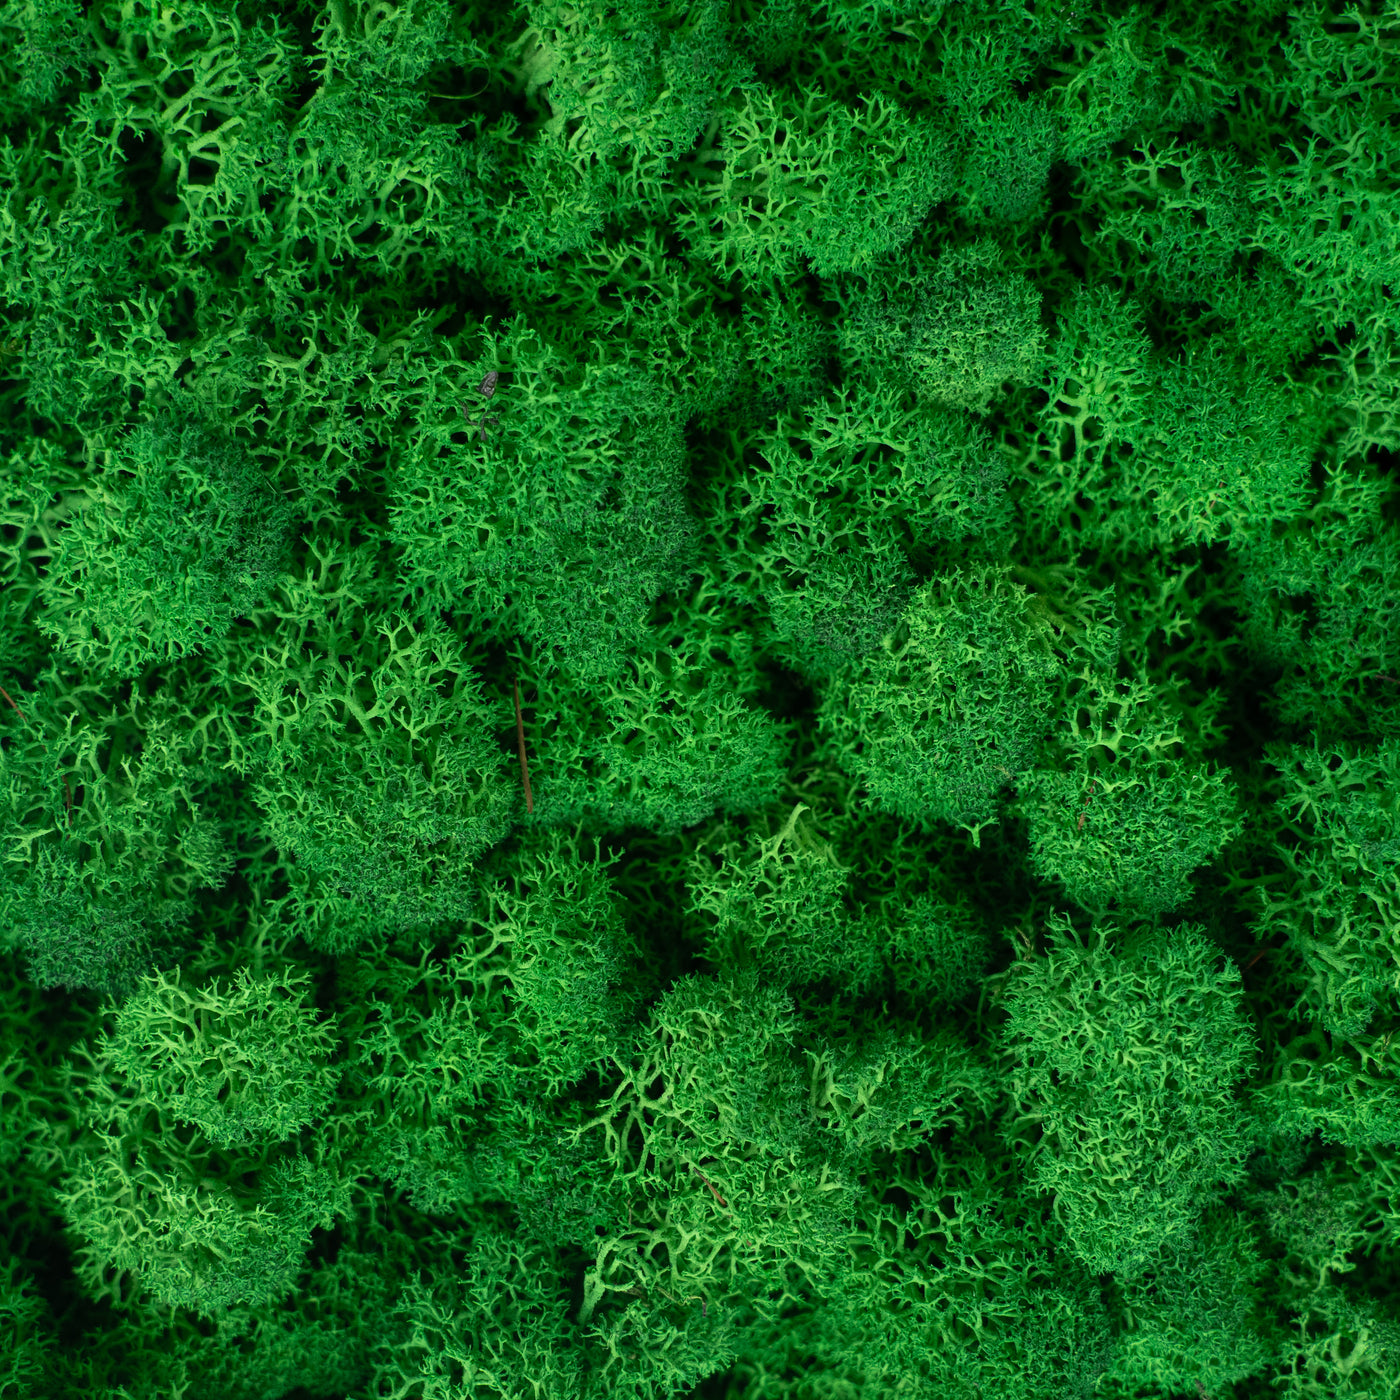 Panou licheni conservati 30x30 cm verde smarald mediu